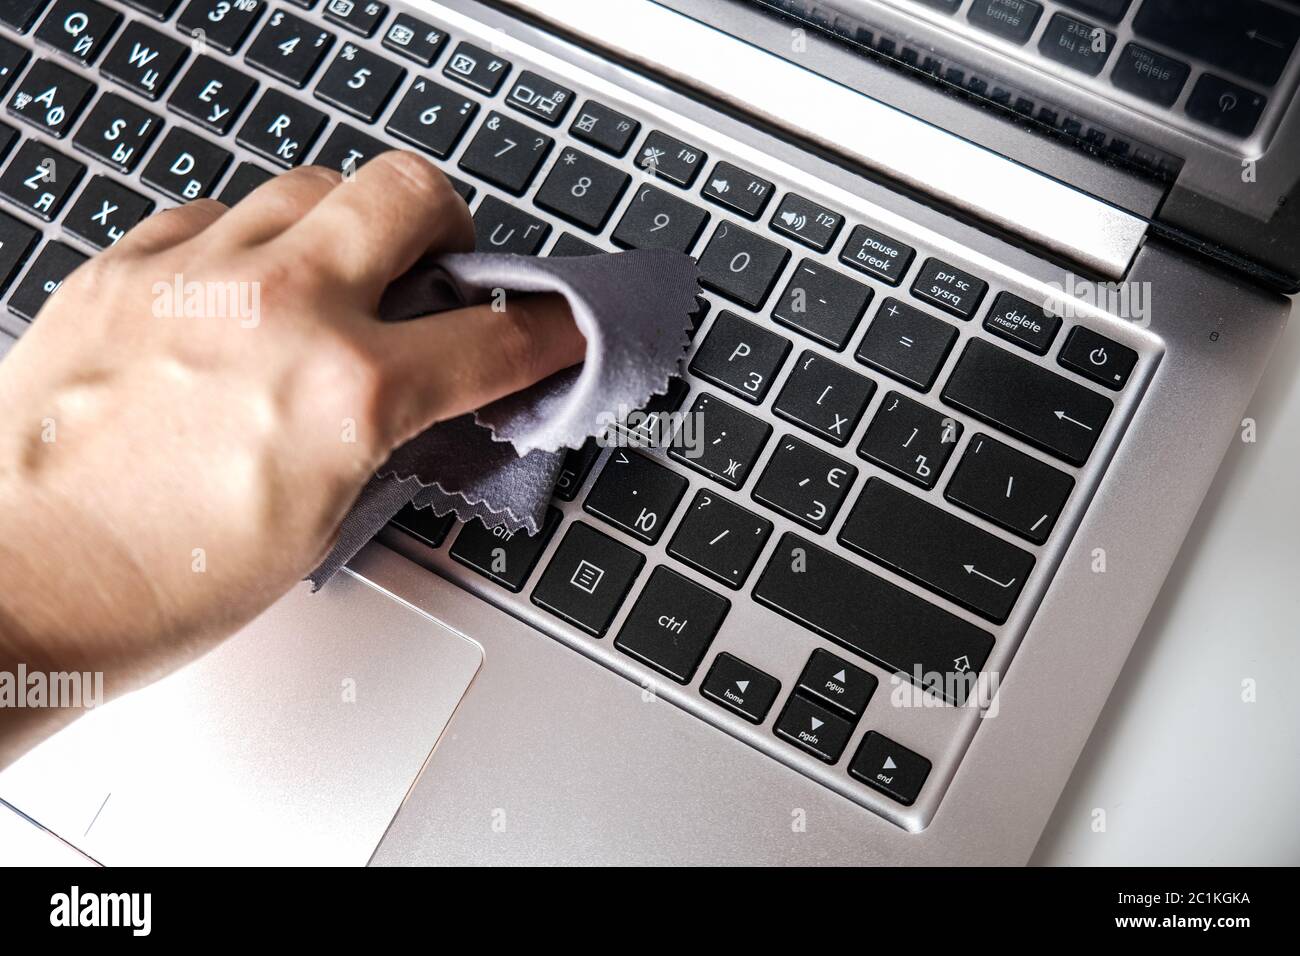 Nettoyage du clavier de l'ordinateur portable avec une serviette. Gros plan sur un ordinateur. Éliminer la poussière et tuer les bactéries pour rester en sécurité à la maison. Protection personnelle Banque D'Images